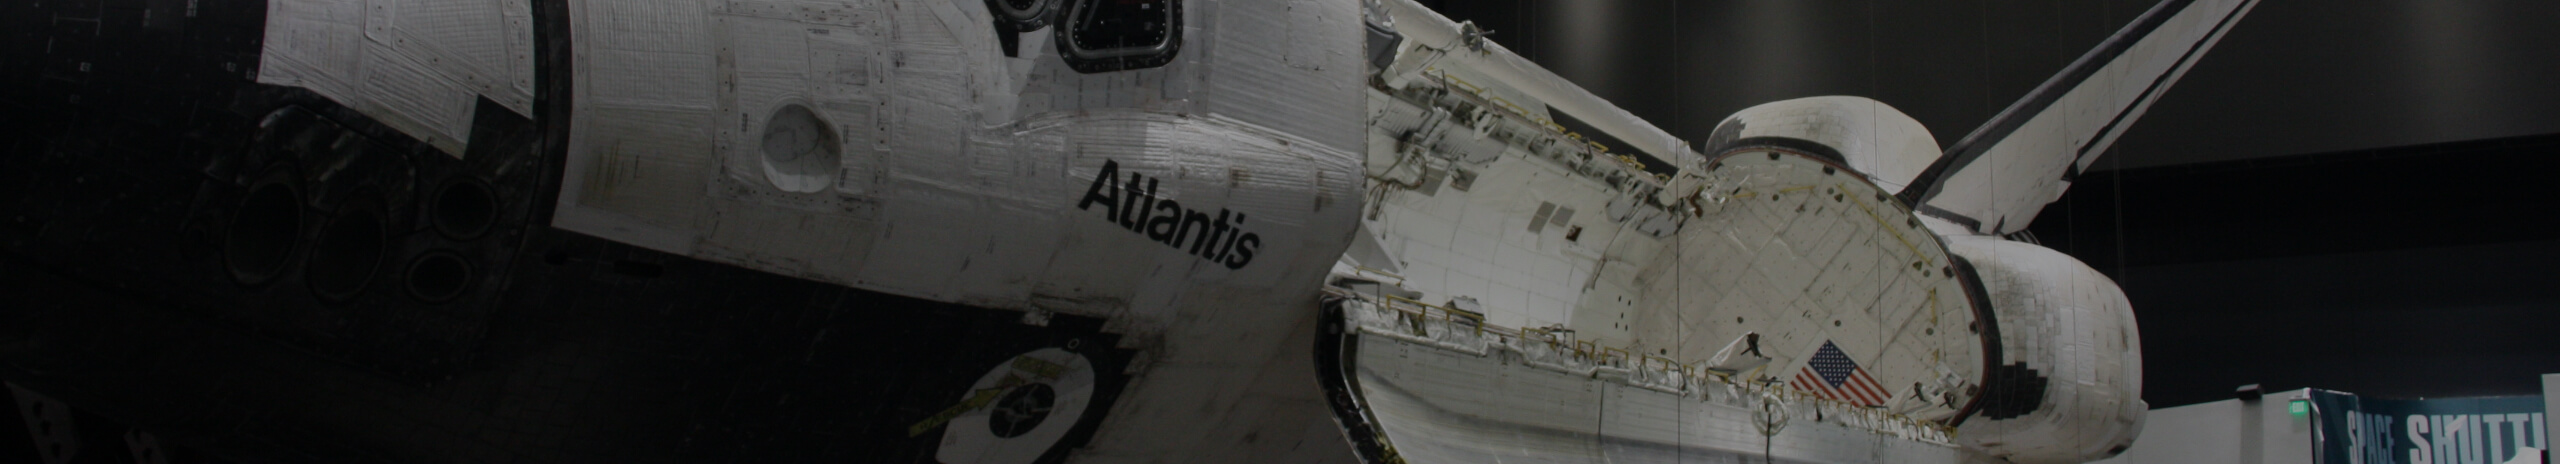 Shuttle Atlantis banner background photo